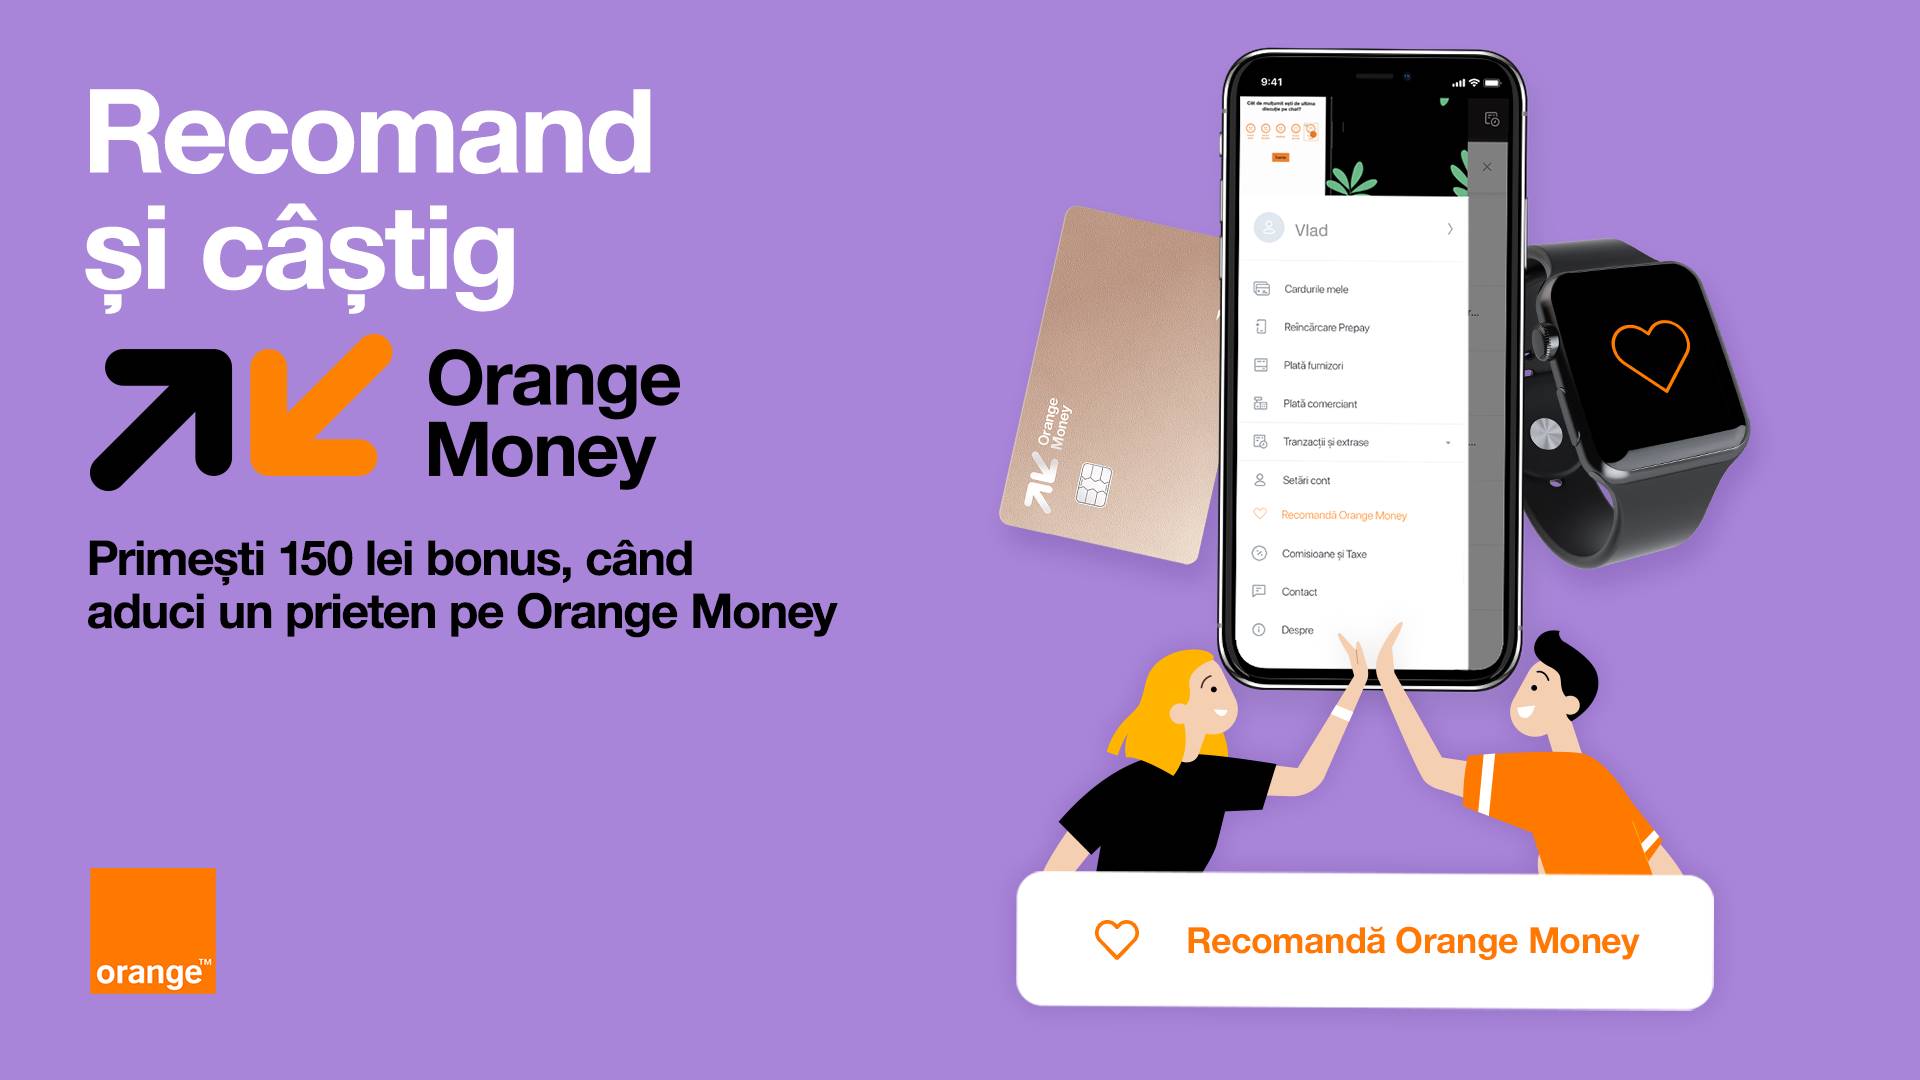 In der offiziellen Ankündigung von Orange erfahren Sie, wie viel Geld rumänischen Kunden durch KOSTENLOSE Empfehlungen gewährt wird